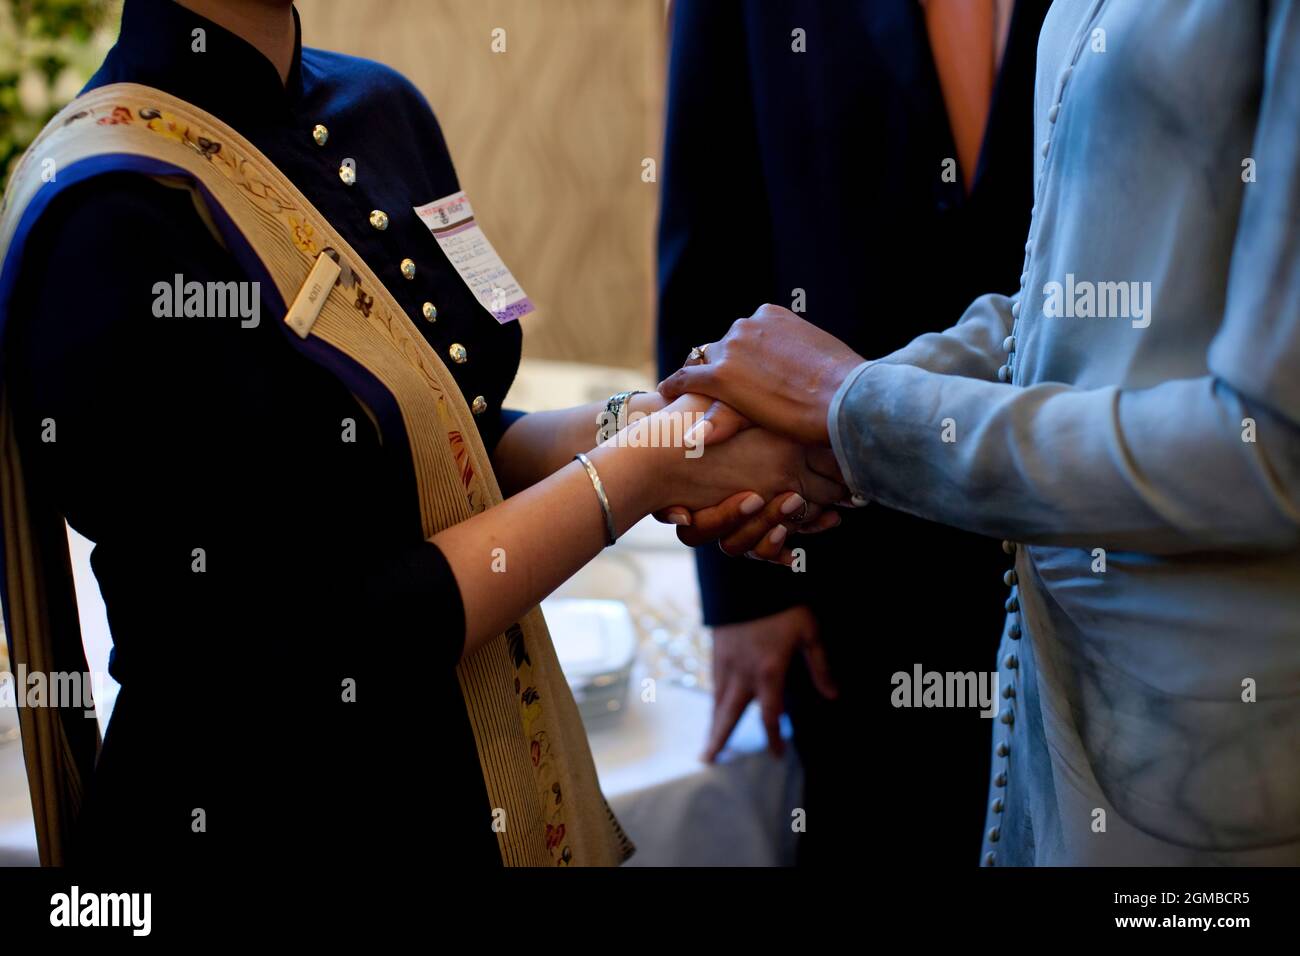 First Lady Michelle Obama begrüßt einen Überlebenden der Anschläge von Mumbai 2008 während eines Treffens im Taj Mahal Palace and Tower Hotel in Mumbai, Indien, am 6. November 2010. (Offizielles Foto des Weißen Hauses von Pete Souza) Dieses offizielle Foto des Weißen Hauses wird nur zur Veröffentlichung durch Nachrichtenorganisationen und/oder zum persönlichen Druck durch die Betreffzeile(en) des Fotos zur Verfügung gestellt. Das Foto darf in keiner Weise manipuliert werden und darf nicht in kommerziellen oder politischen Materialien, Anzeigen, E-Mails, Produkten oder Werbeaktionen verwendet werden, die in irgendeiner Weise die Zustimmung oder Billigung des Präsidenten, des, nahelege Stockfoto